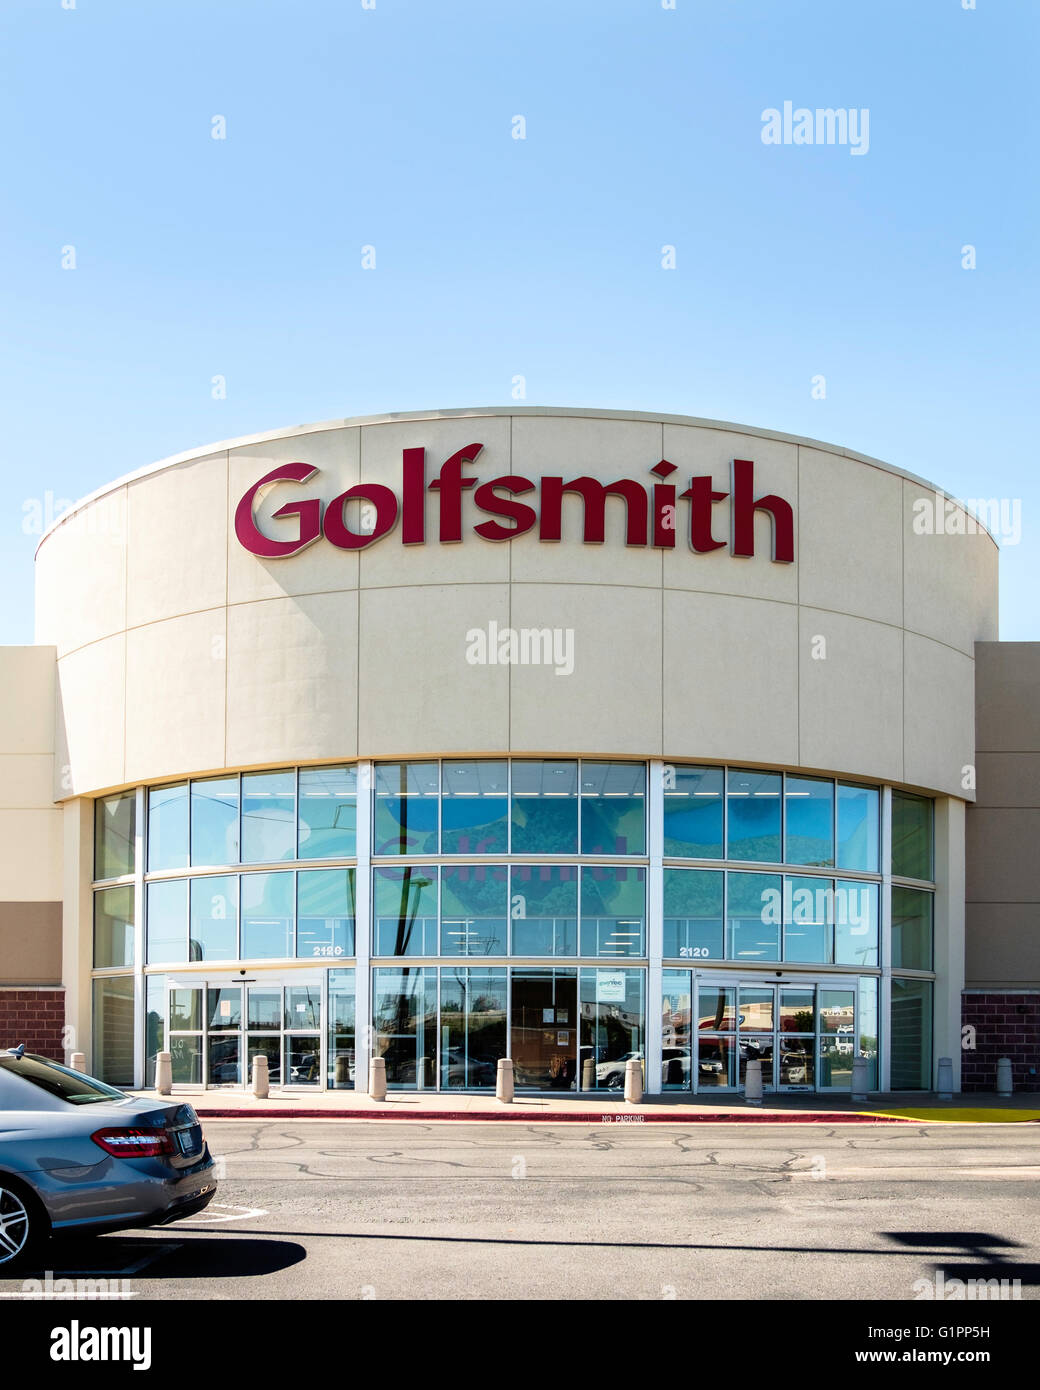 L'extérieur de Golfsmith, ou Golfsmith International, un haut-tec détaillant multi-canal de l'équipement de golf. Oklahoma City, OK Banque D'Images